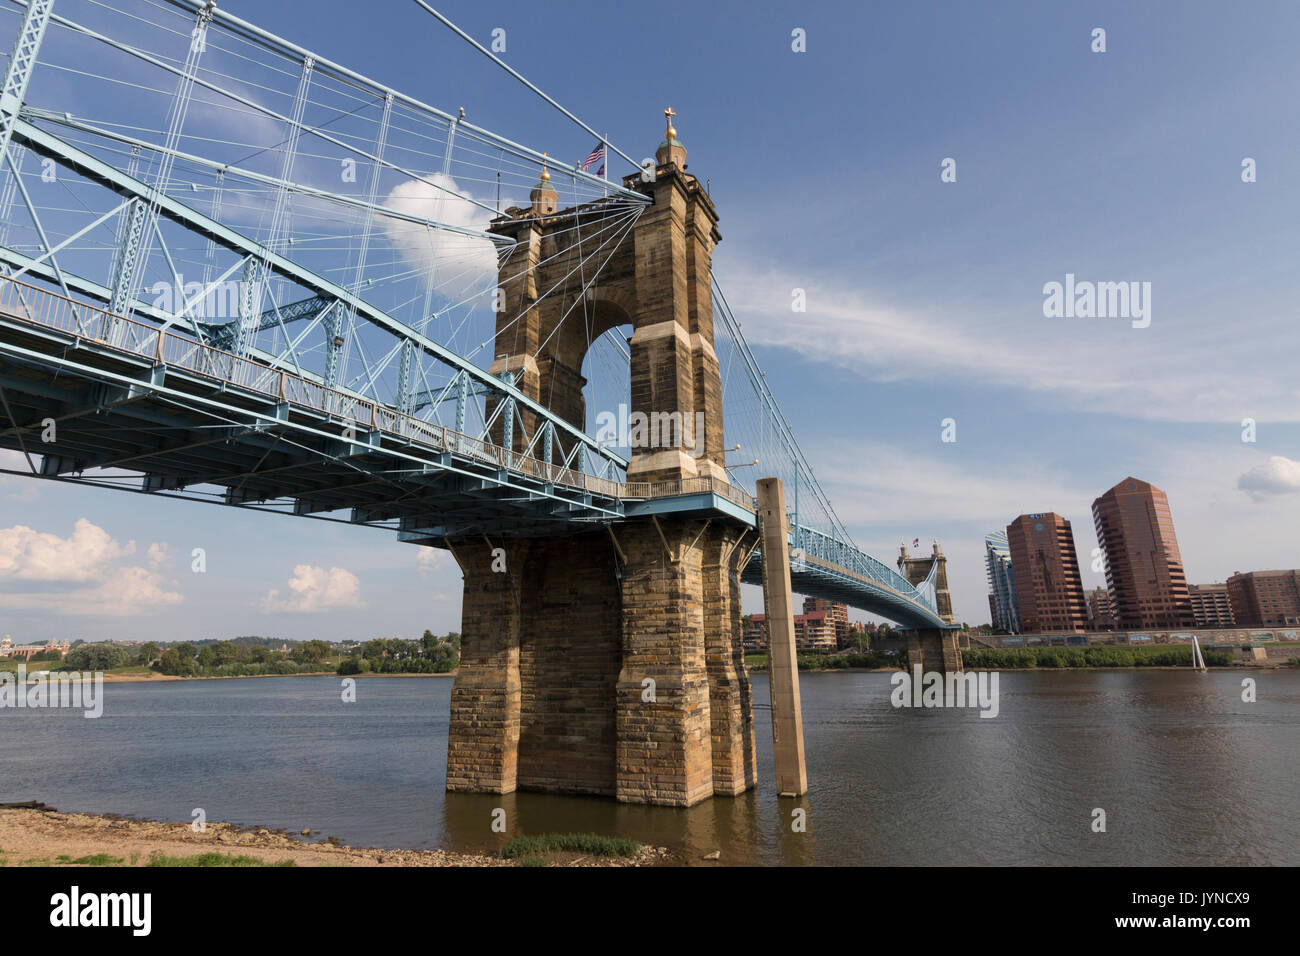 Image of the Suspension Bridge located in Cincinnati, Ohio. Stock Photo